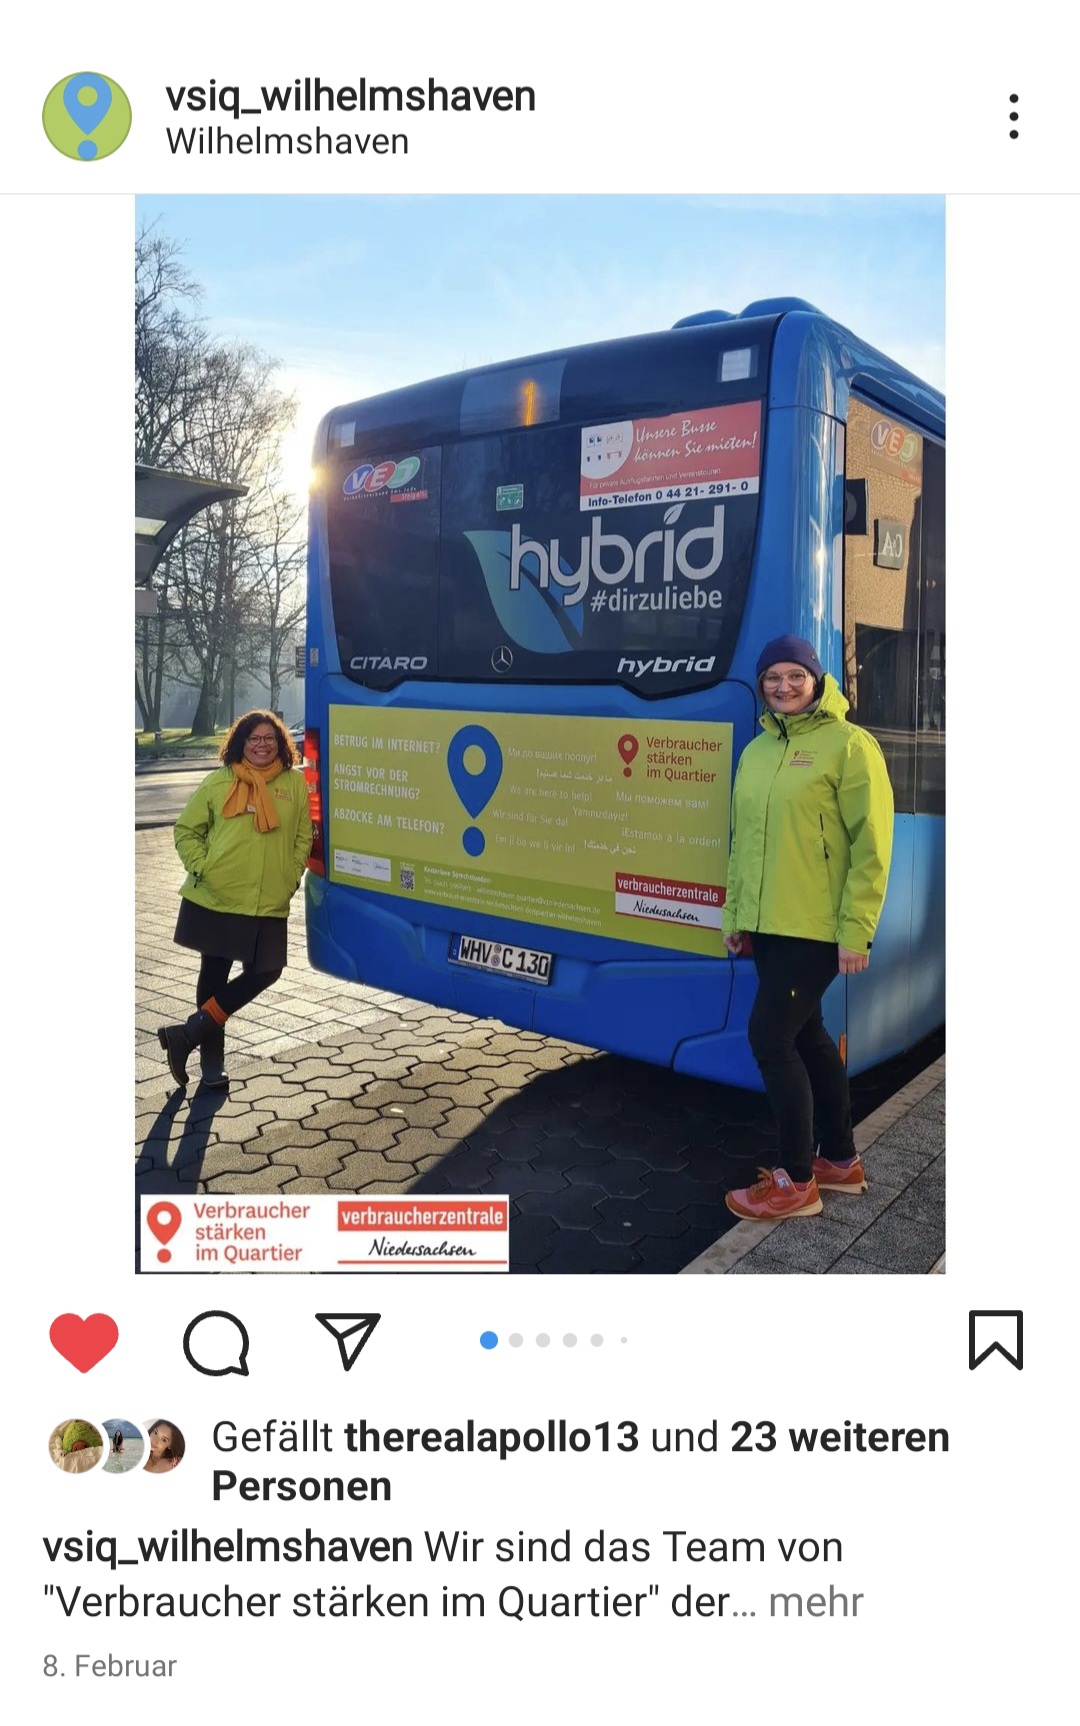 Ein Instagram Post der Seite "vsip_wilhelmshaven". Der Post ist ein Bild mit einer Werbung von "Verbraucher stärken im Team". Neben den Bus stehen zwei Personen, die eine Jacke von "Verbrauchen stärken im Quartier" an haben.